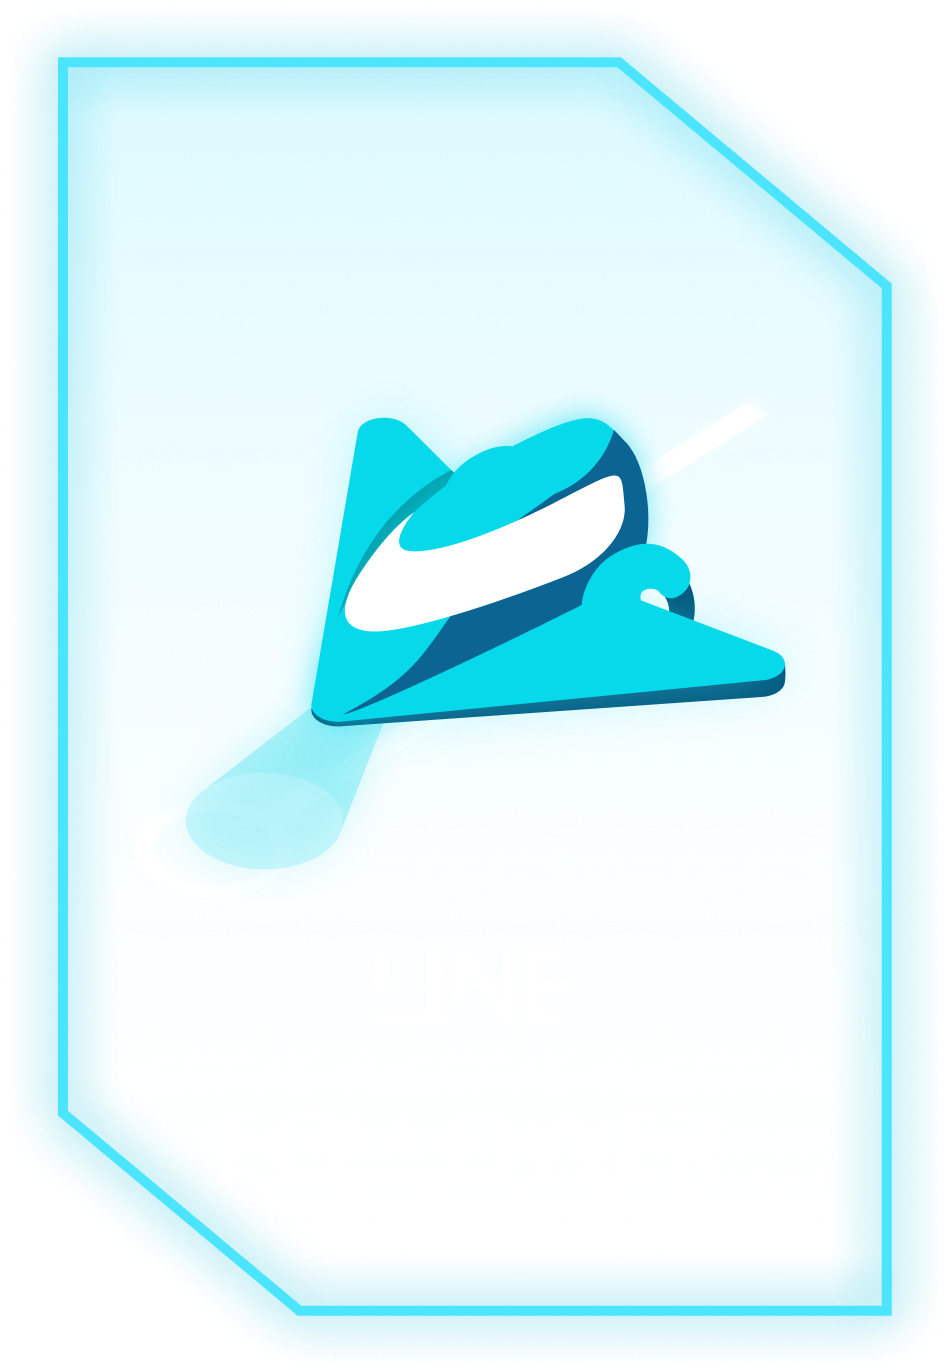 Line Follower